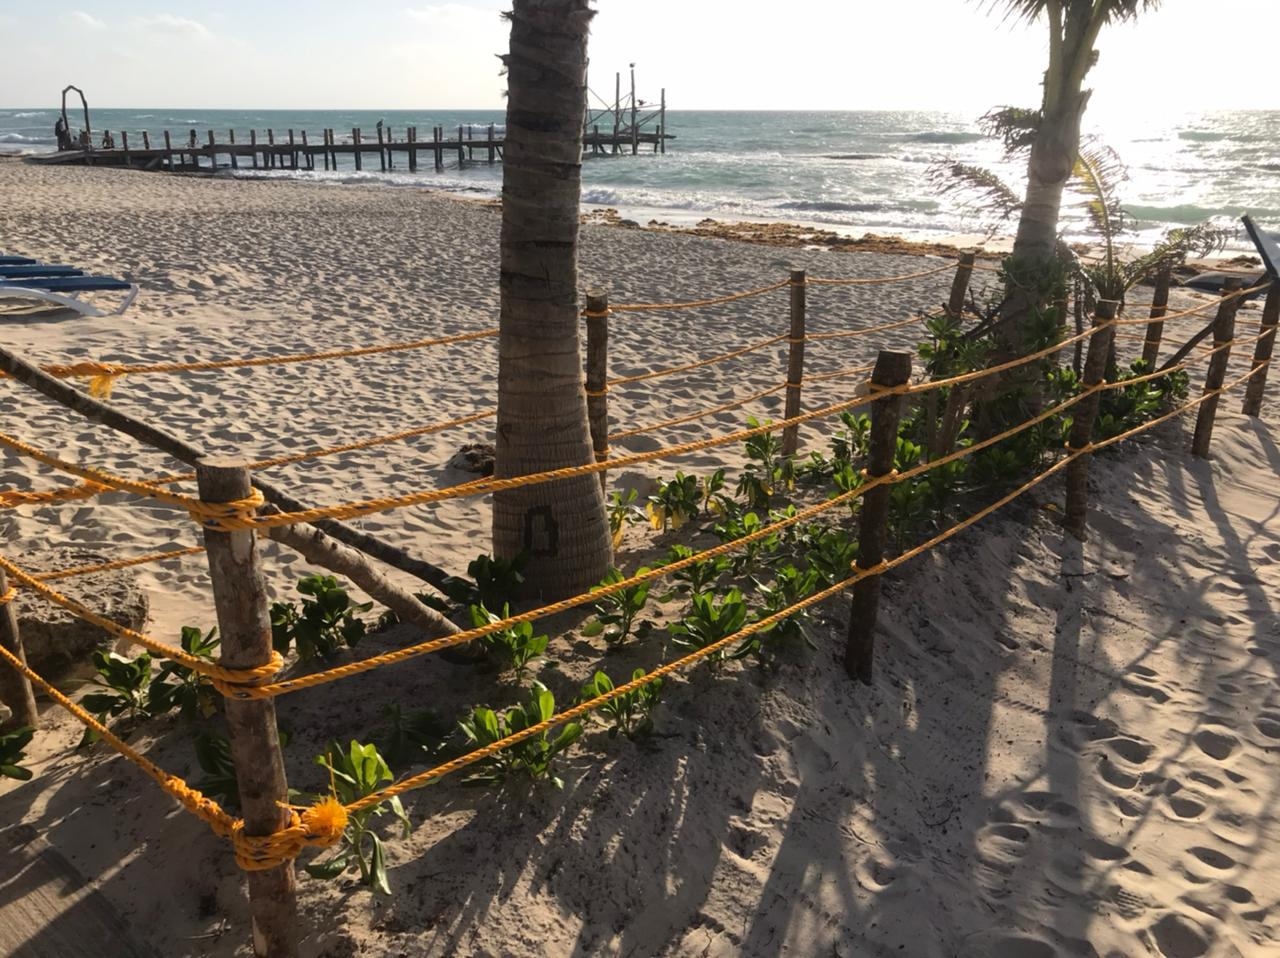 Hoteleros no pueden prohibir el libre acceso a las playas de Quintana Roo